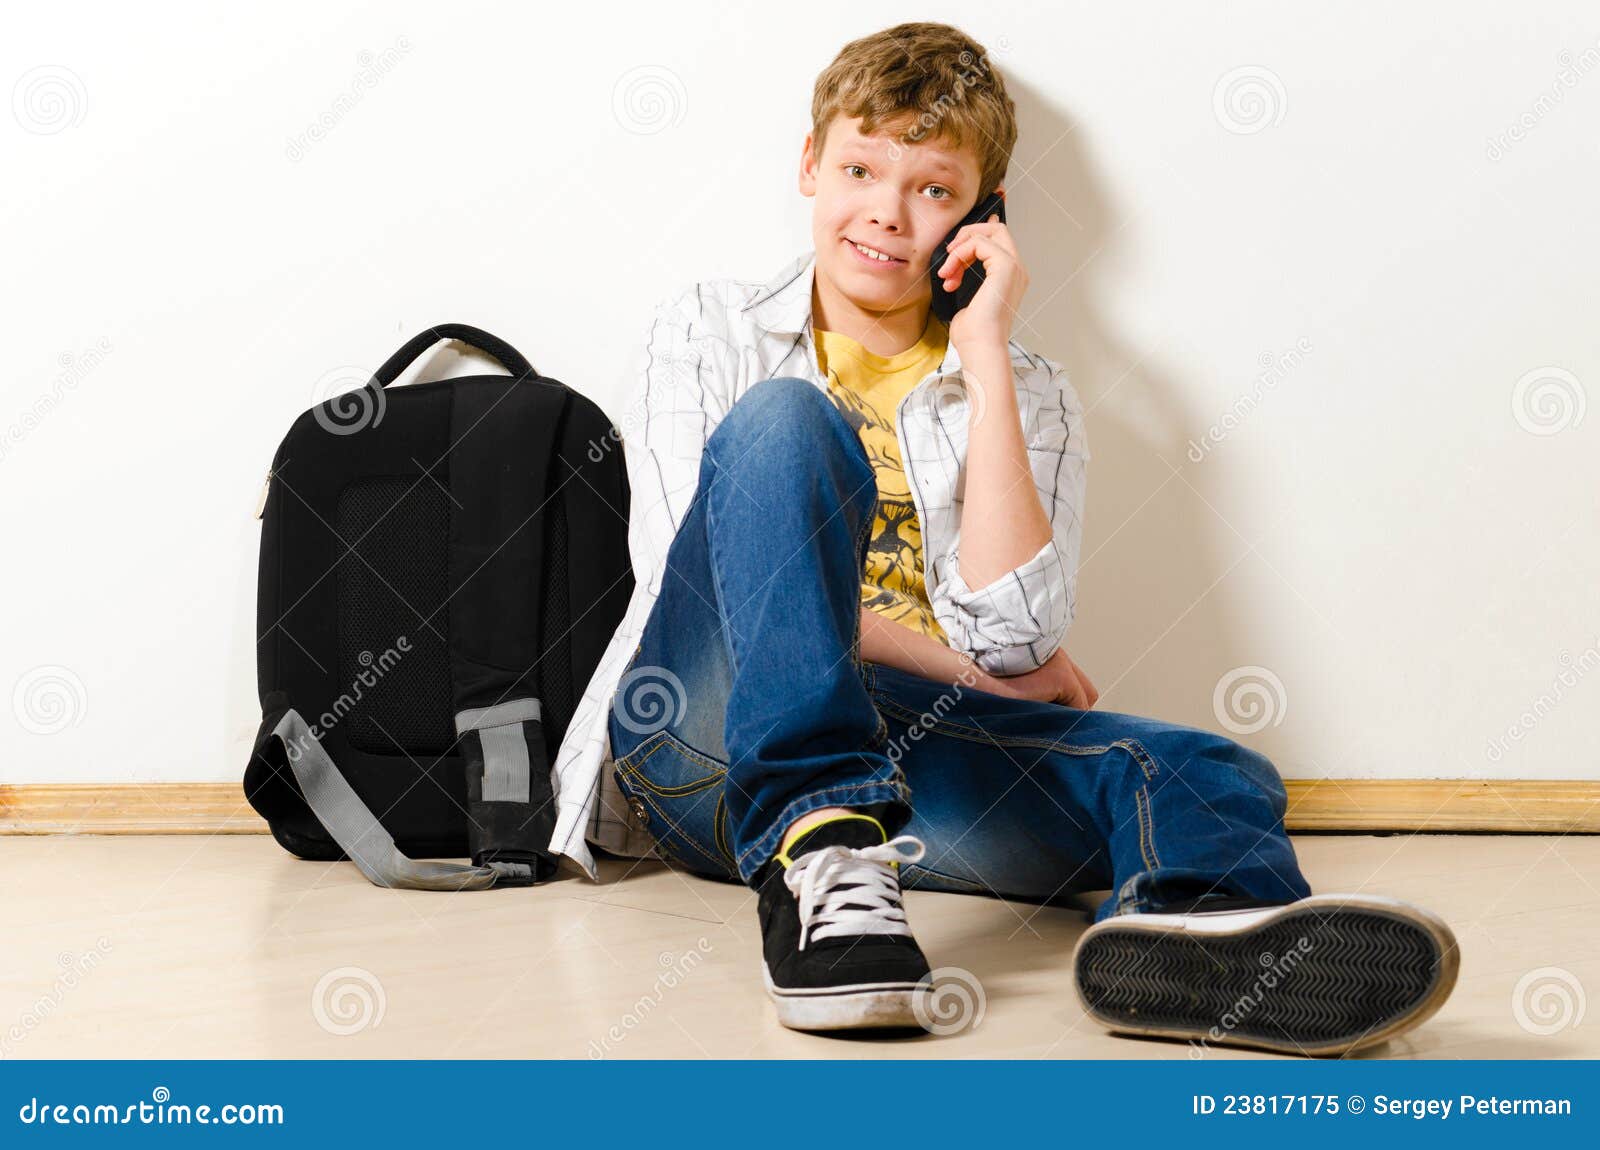 Сколько подростки сидят в телефоне. Подросток звонит мальчику. Сидит подросток у банка. Картинка подростка звонящего по телефону с парнем. Фото где подростка звонит по телефону.